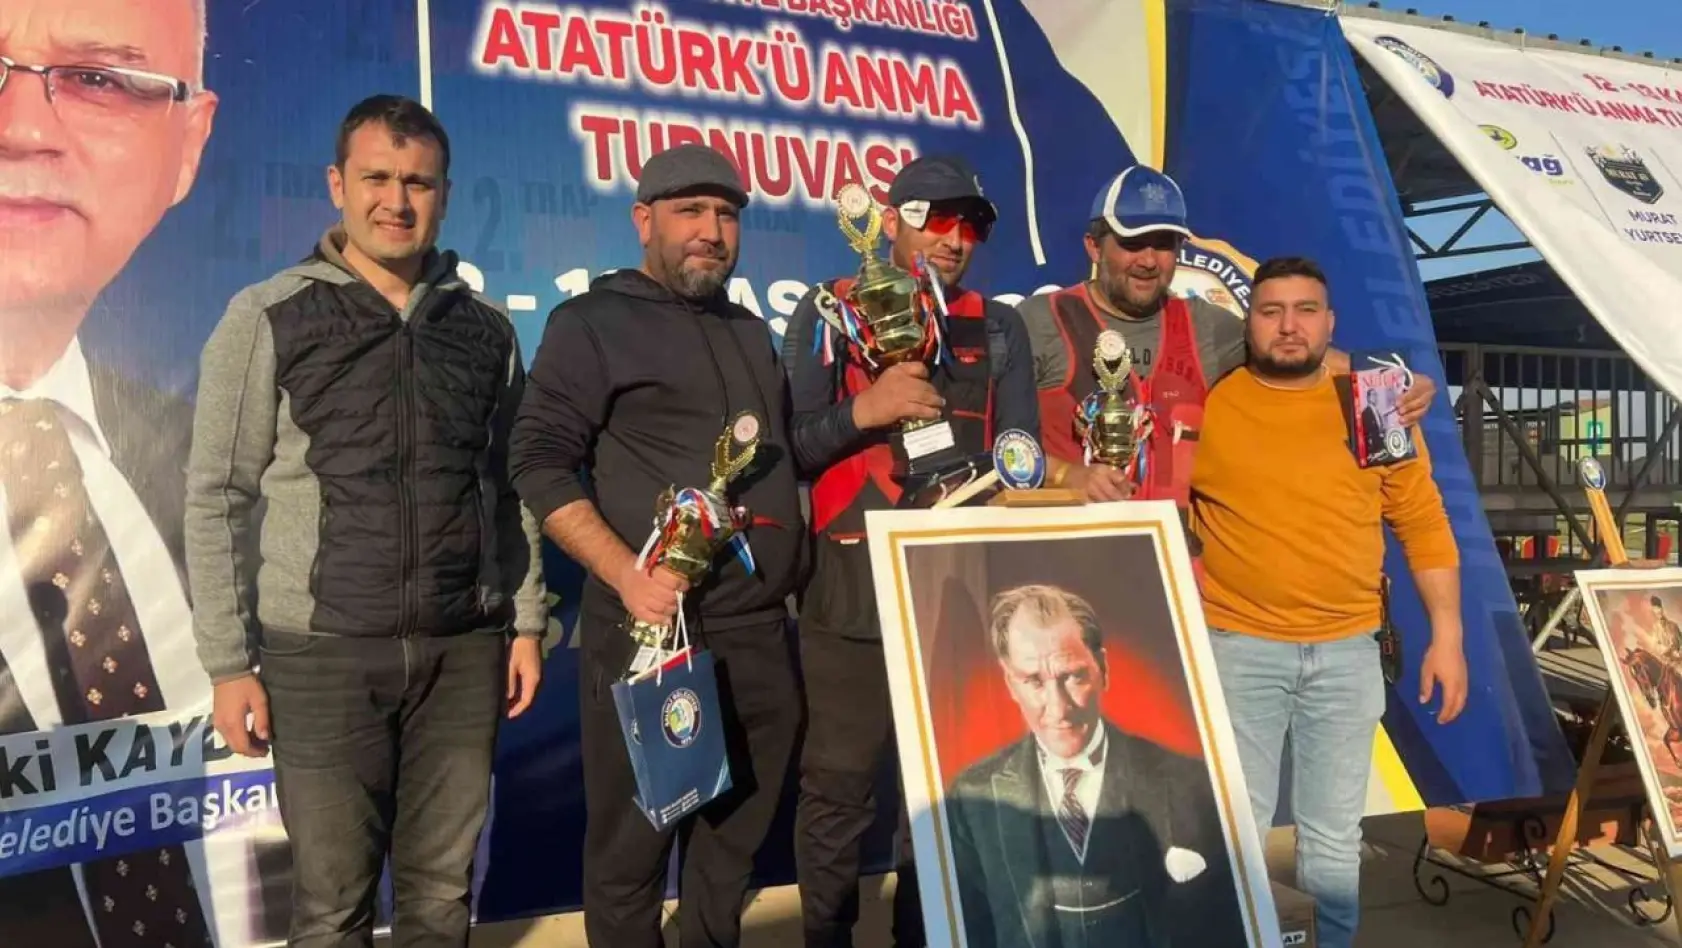 Salihli'de Atatürk'ü Anma Turnuvası'nda dereceye girenlere ödül